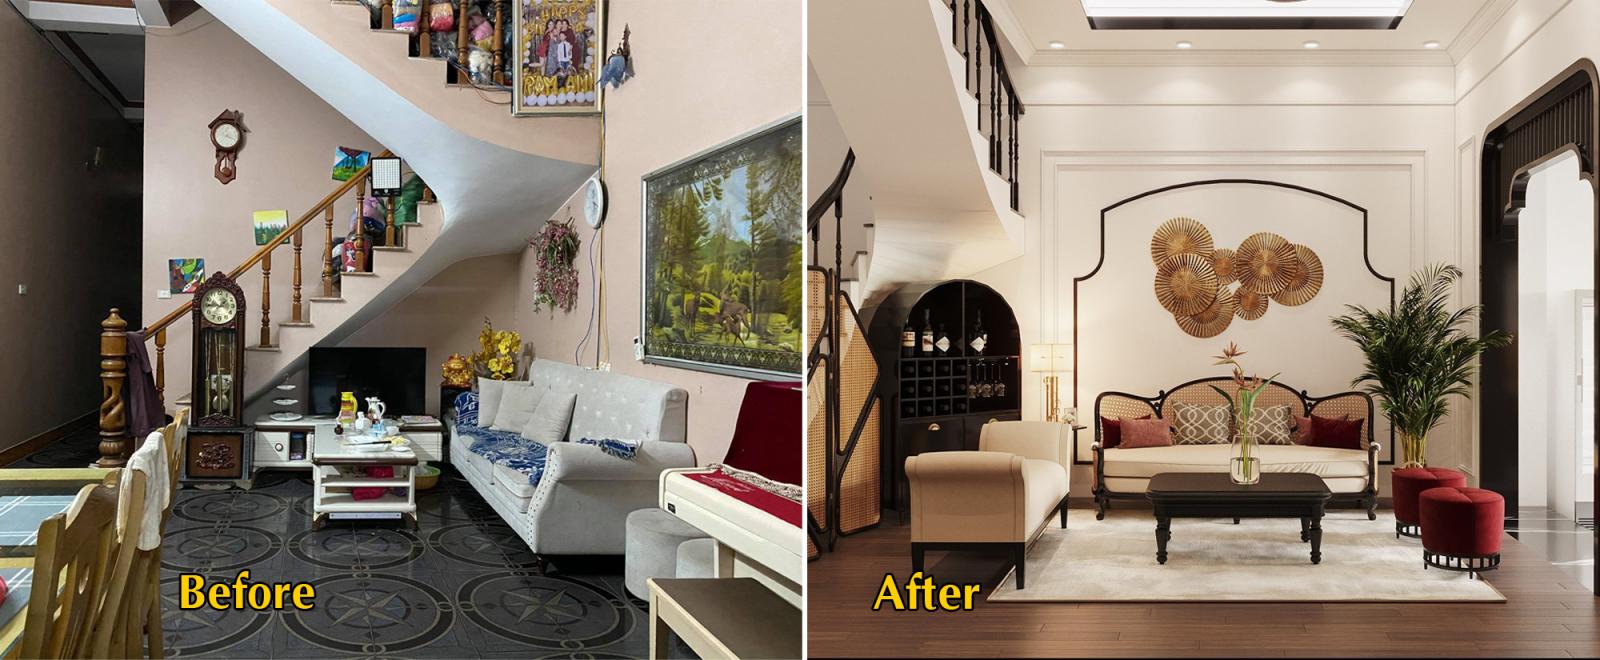 hình ảnh phòng khách nhà phố trước và sau khi được cải tạo